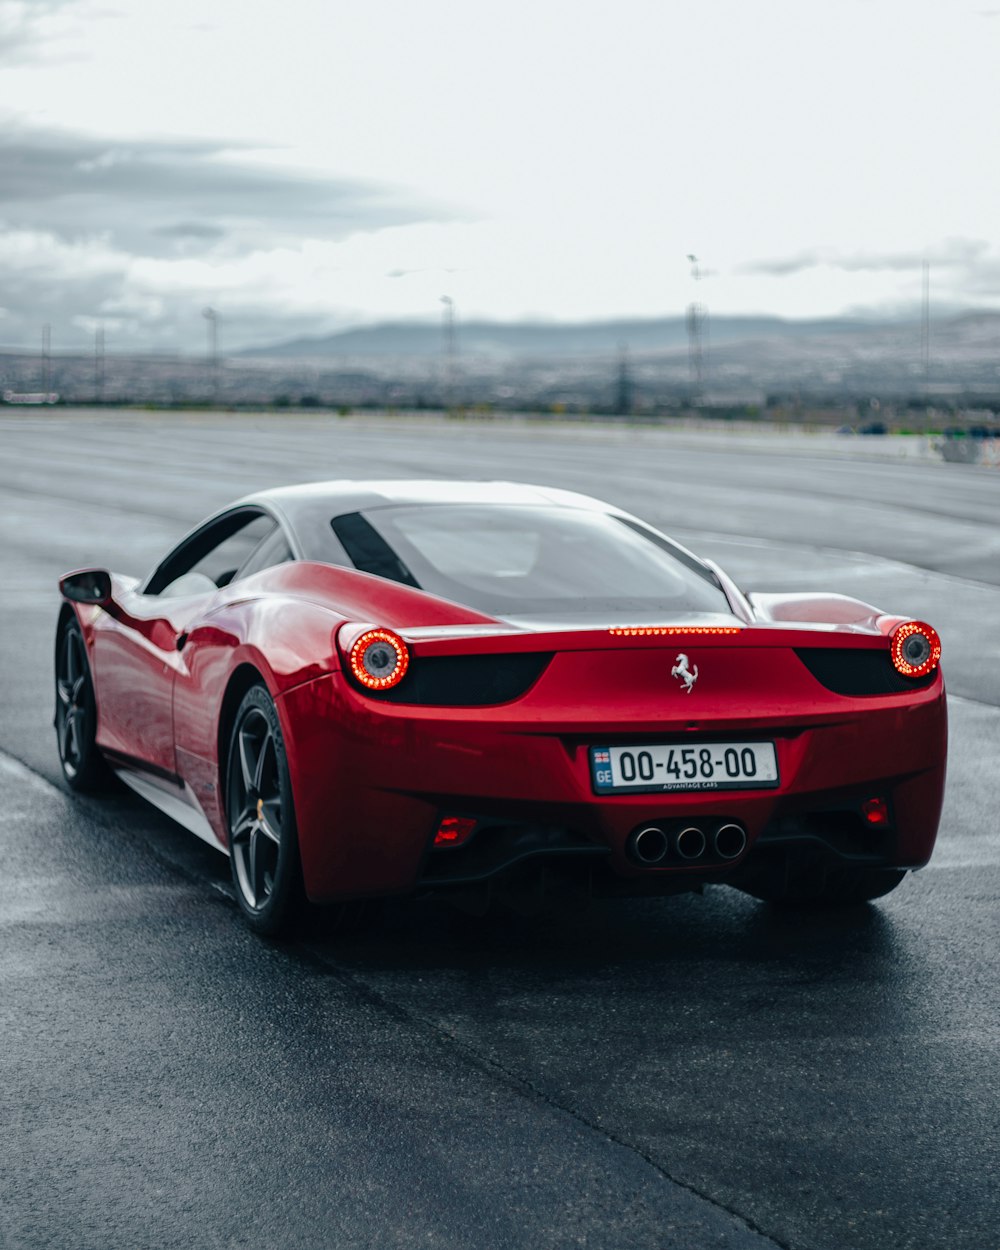 Une voiture de sport Ferrari rouge roulant sur une route